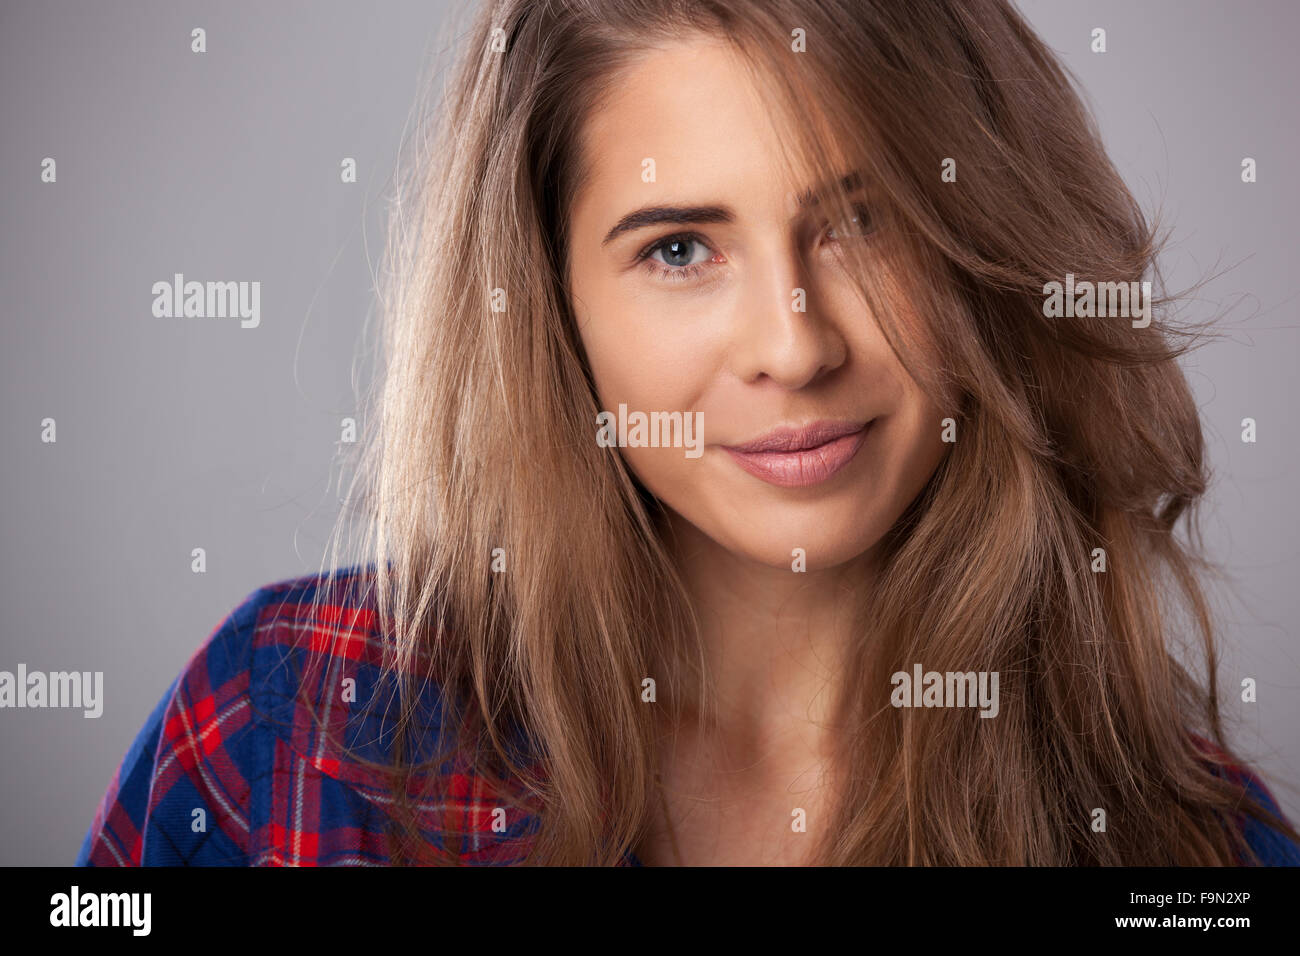 Studio portrait of happy young woman sur fond gris. Banque D'Images